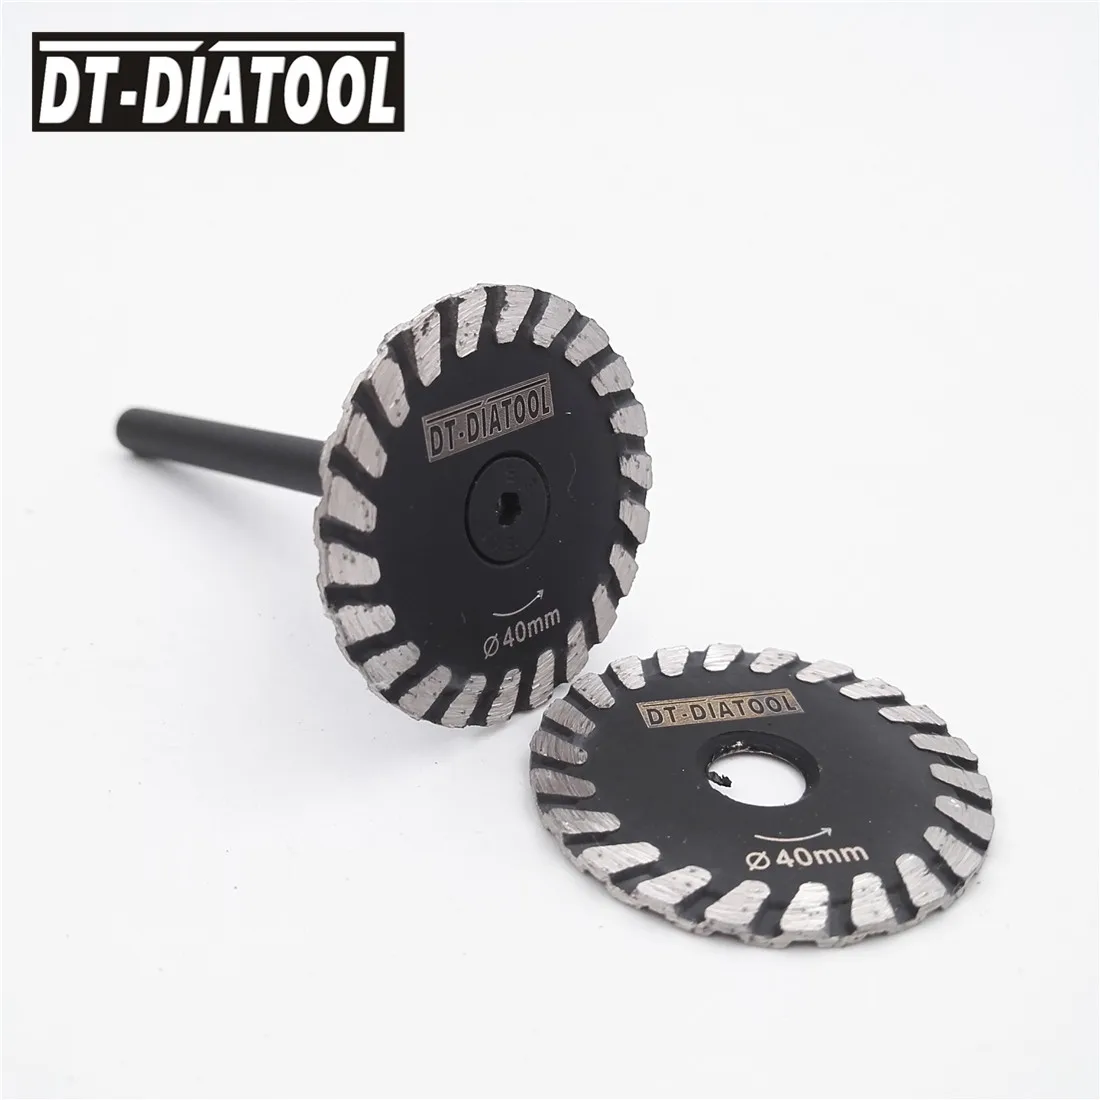 DT-DIATOOL 2stk Mini Diamond savklinge Udtagelig 6 mm Skaft Turbo svinghjul for Granit, Marmor, Sten, Beton slibeskive 2